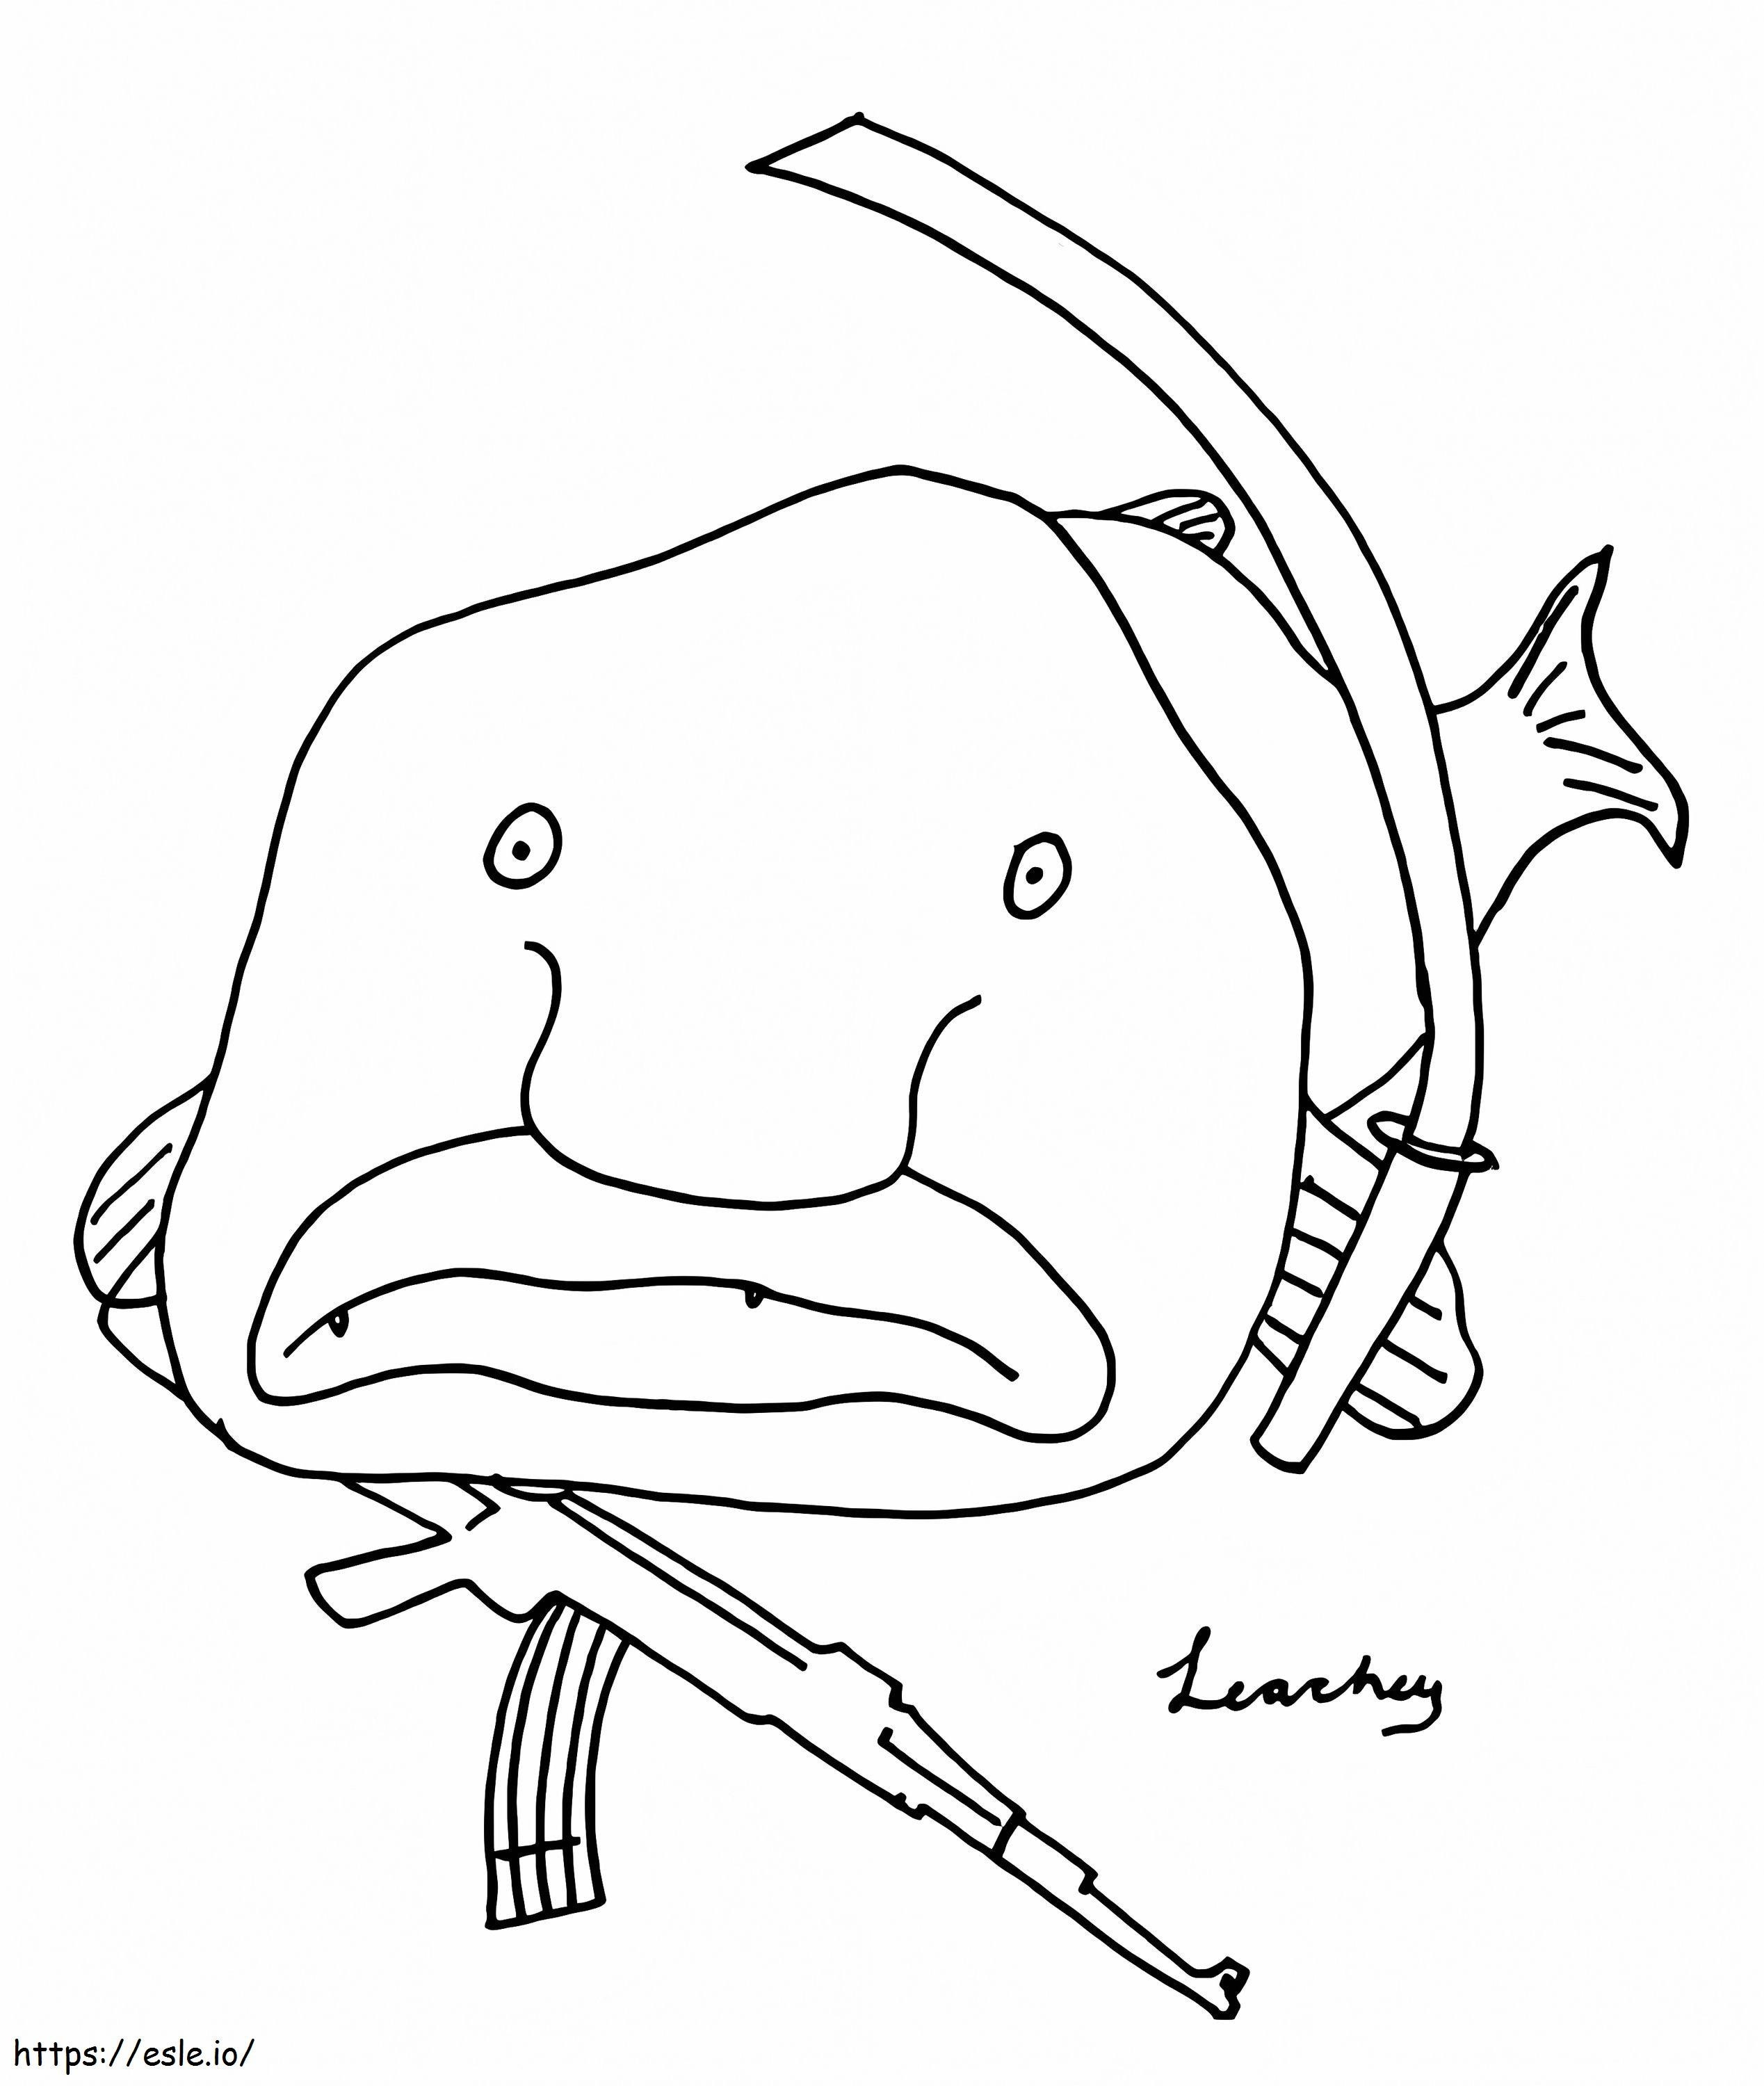 Blobfish con le armi da colorare